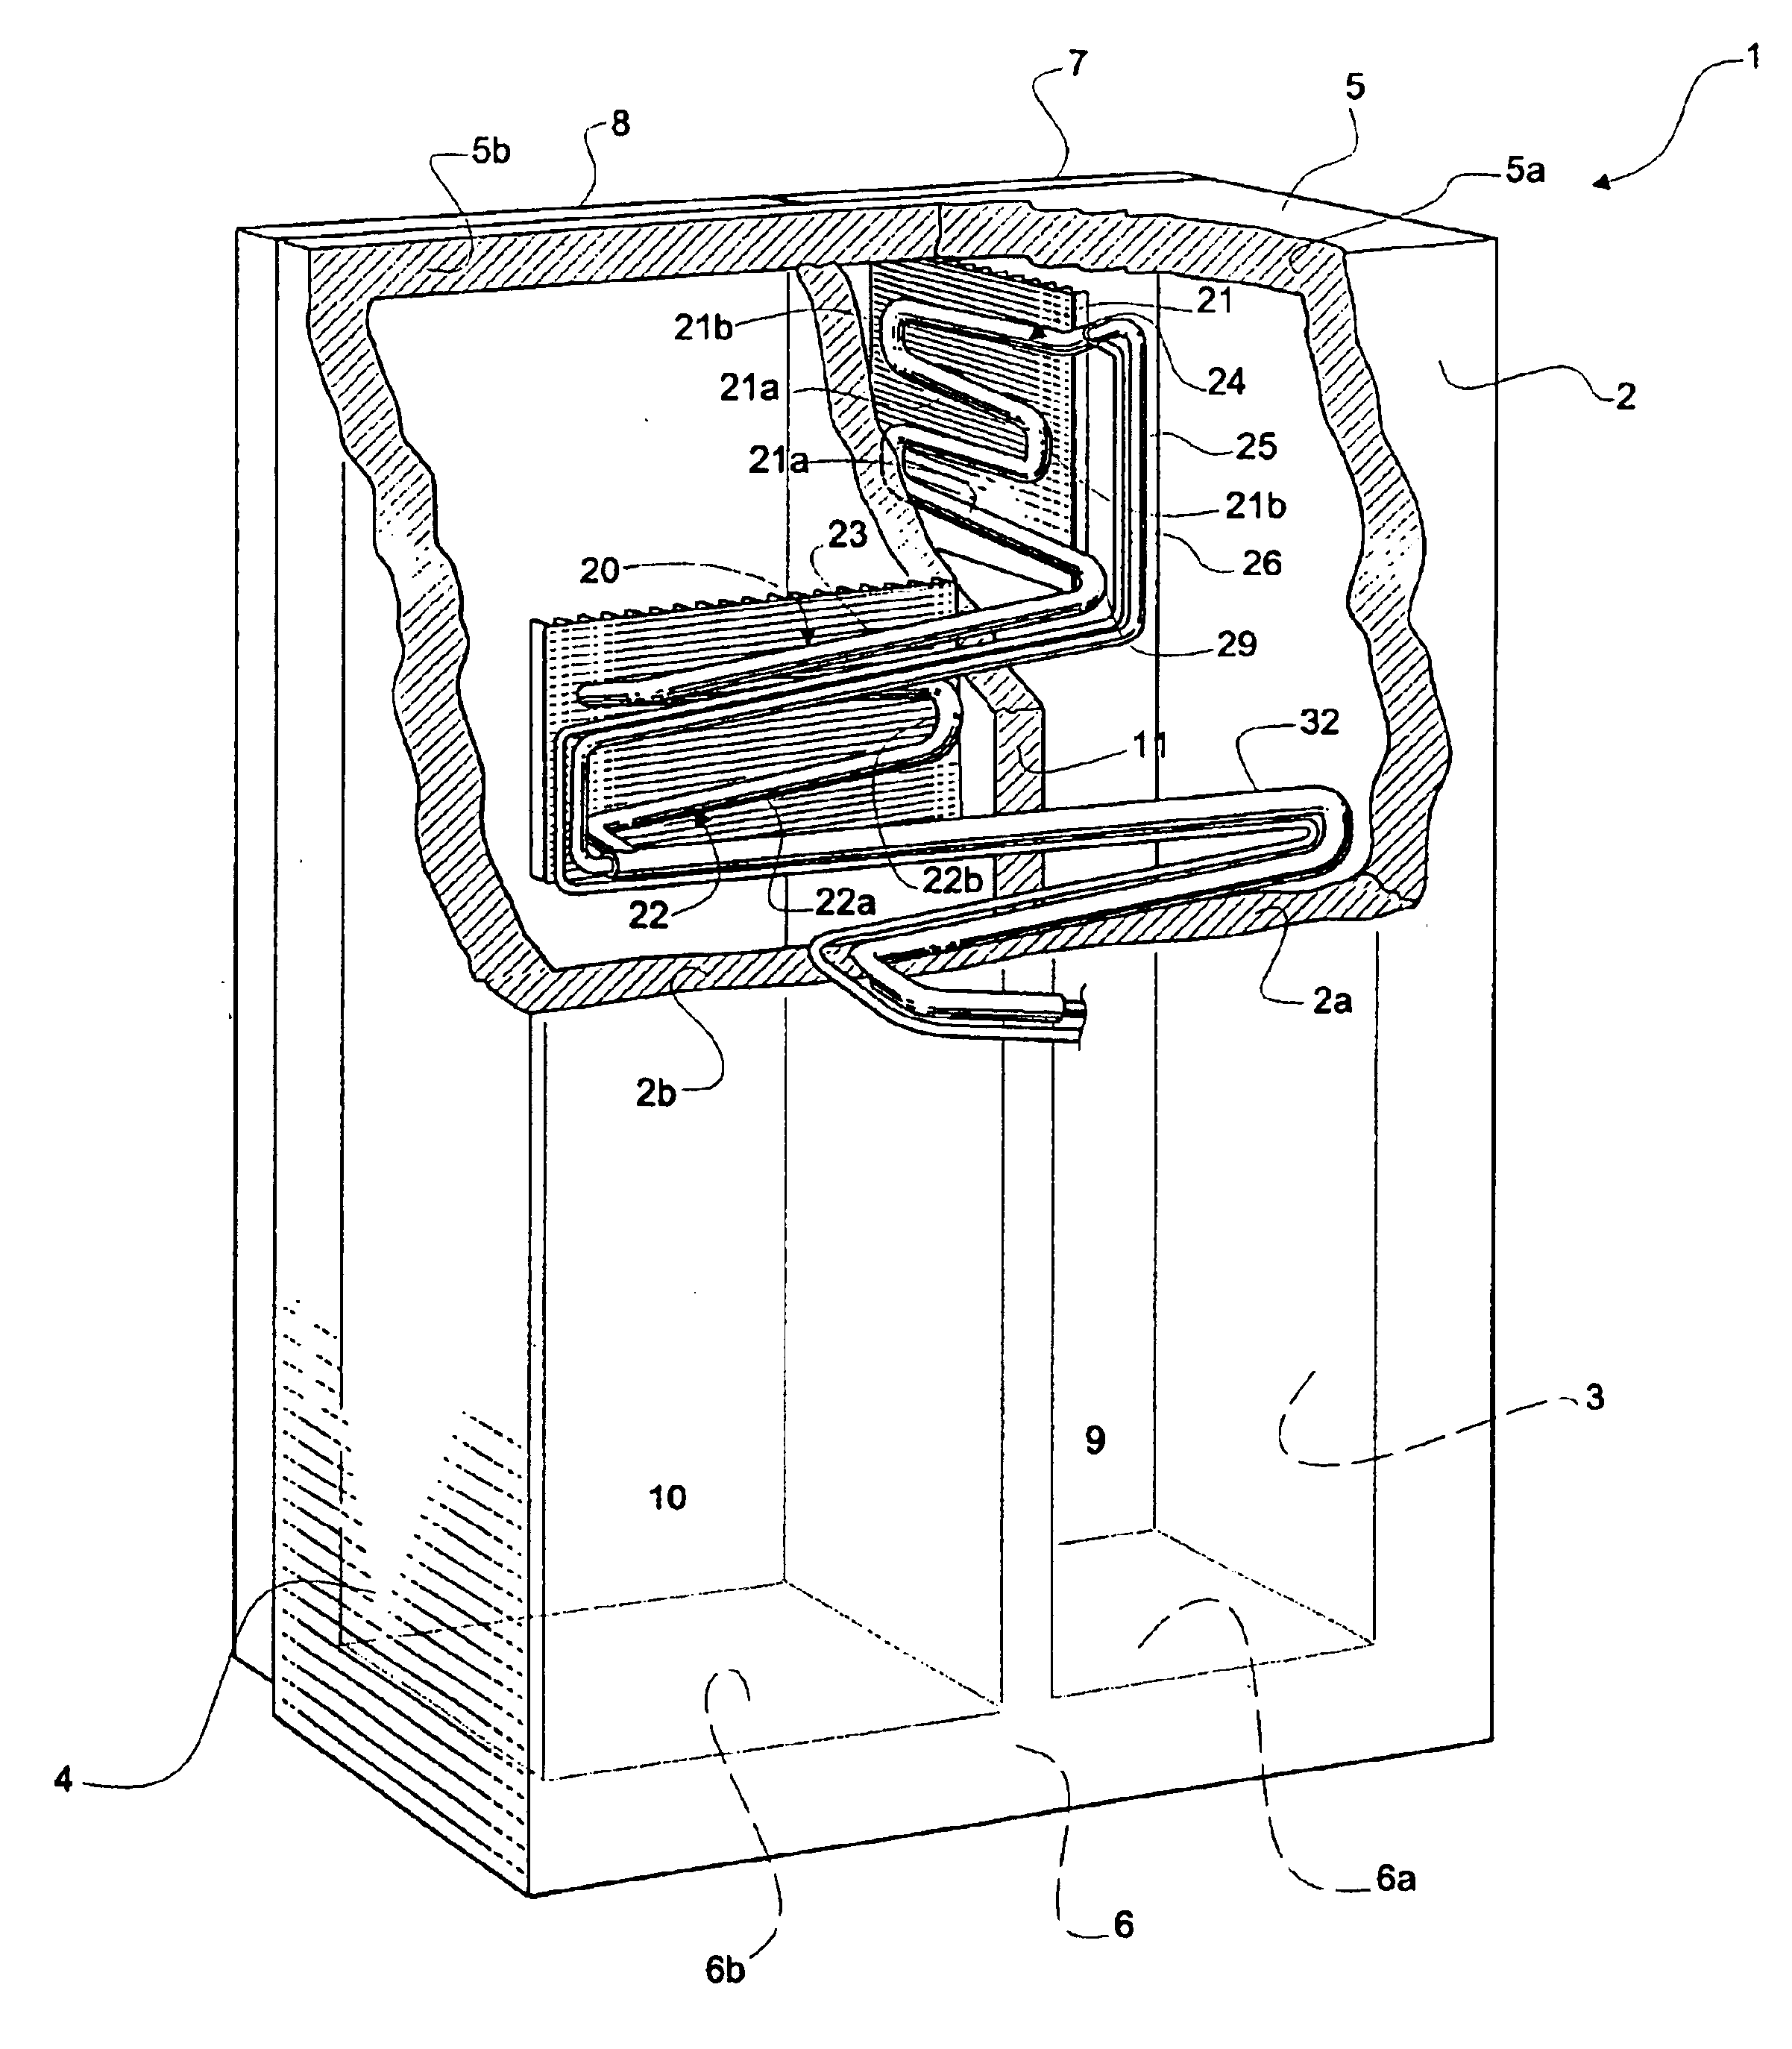 Absorption refrigerator